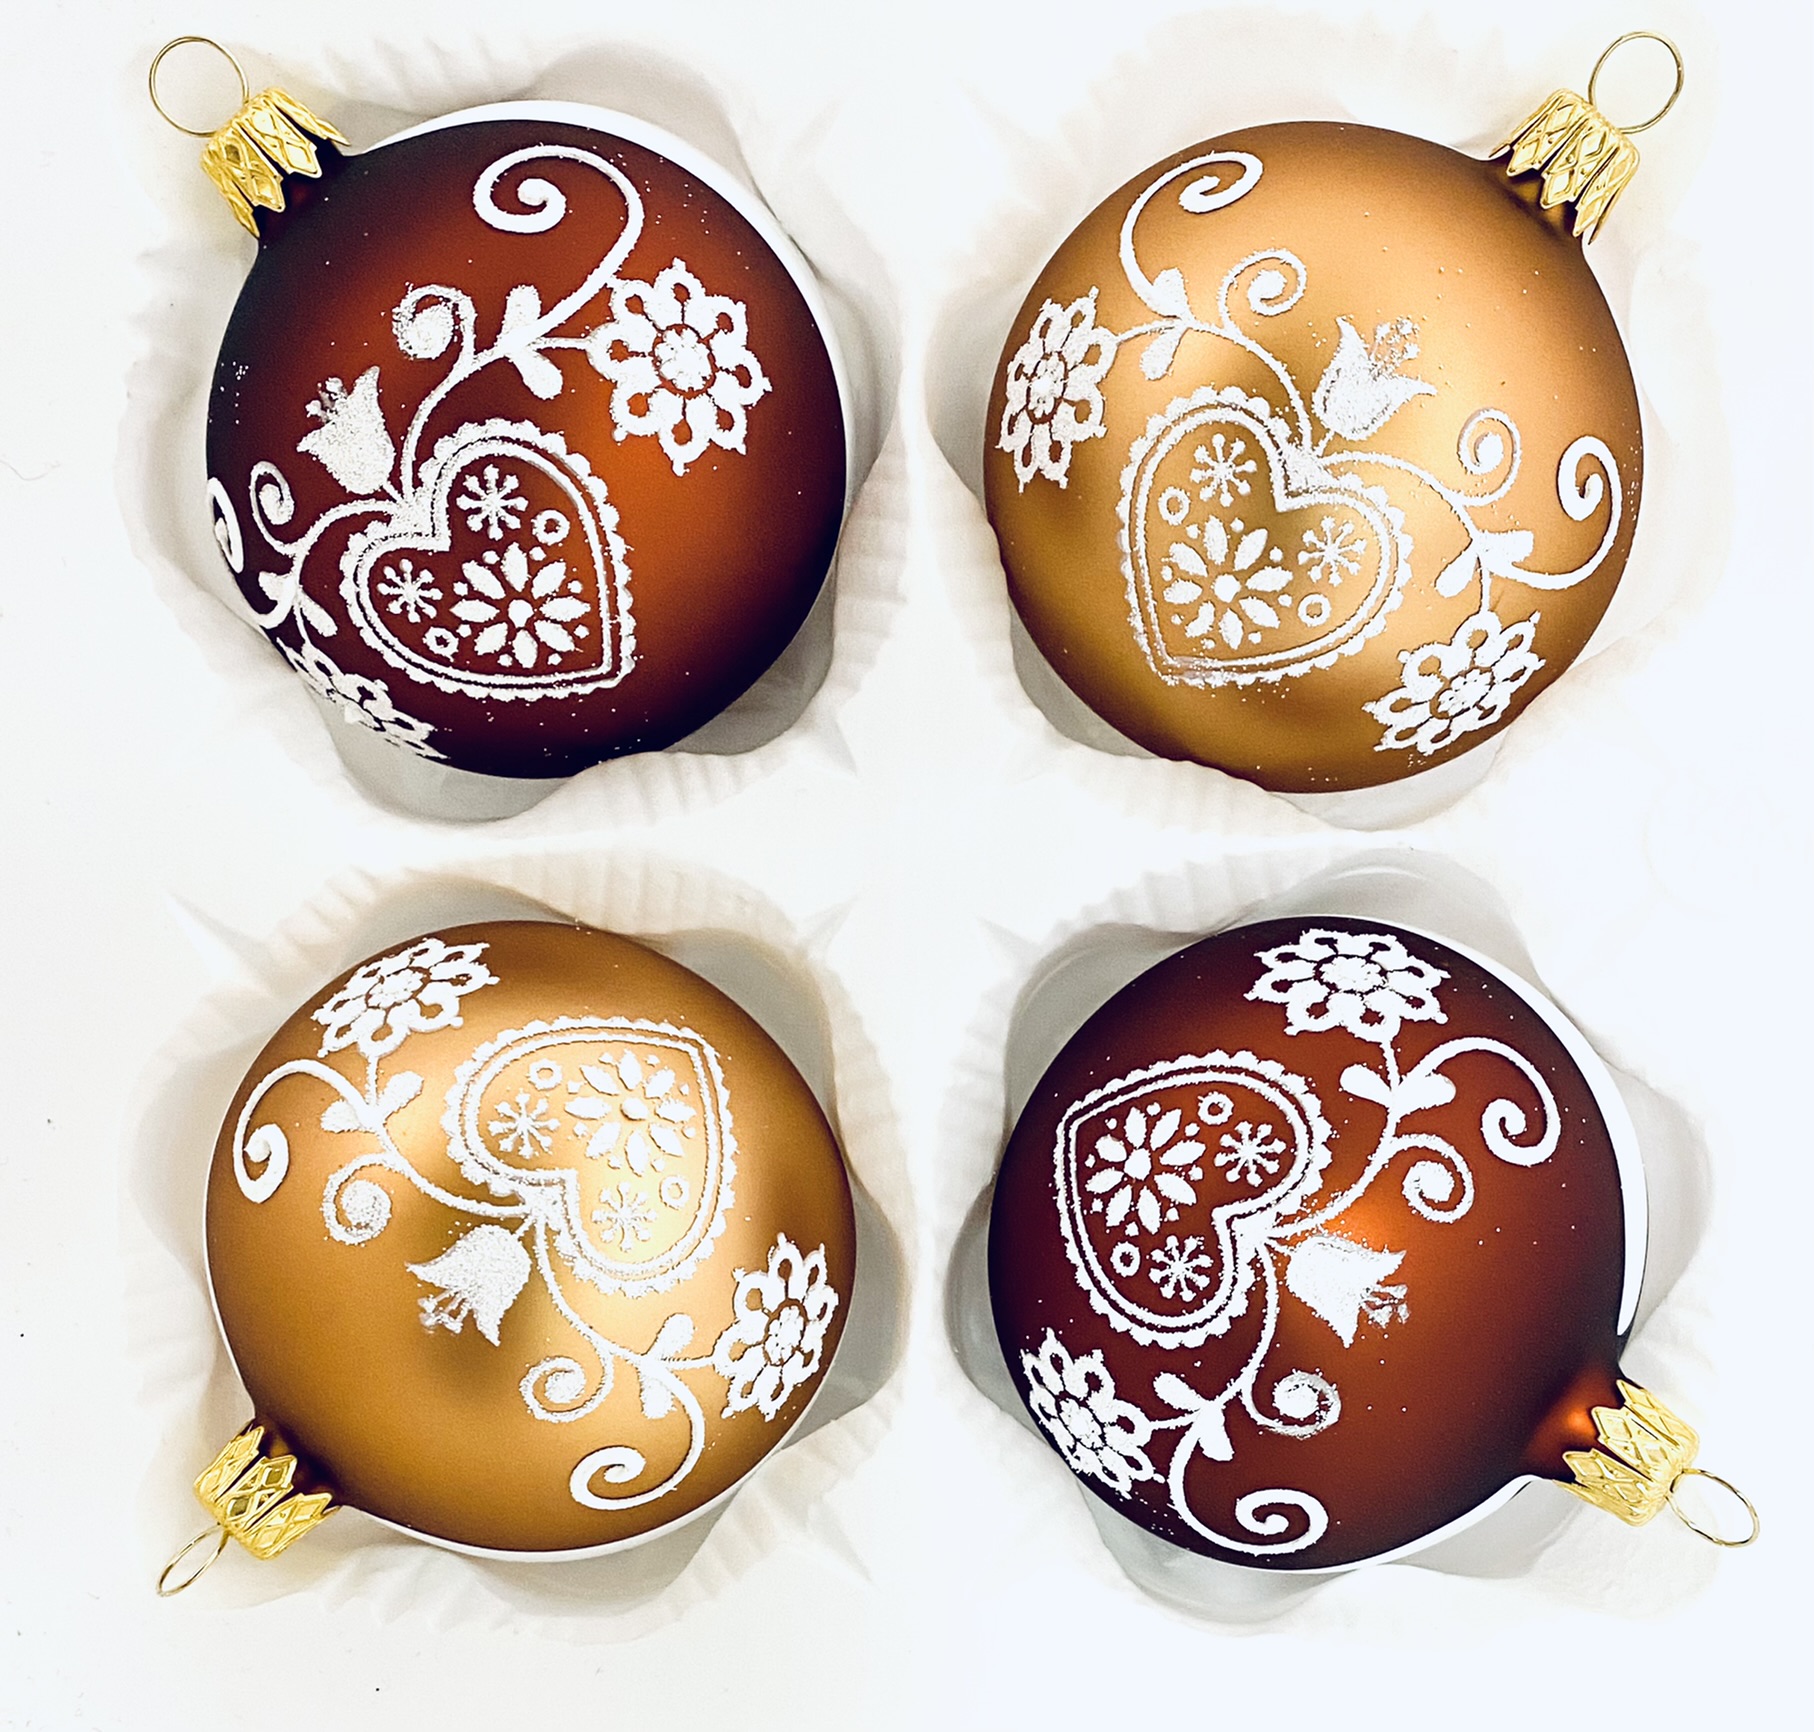 Irisa Vánoční ozdoby JITŘENKA kombinace tmavě a světle hnědé koule s dekorem perník 7 cm, SET 4 ks Balení: 4ks, Barva: hnědá, Velikost: 7 cm